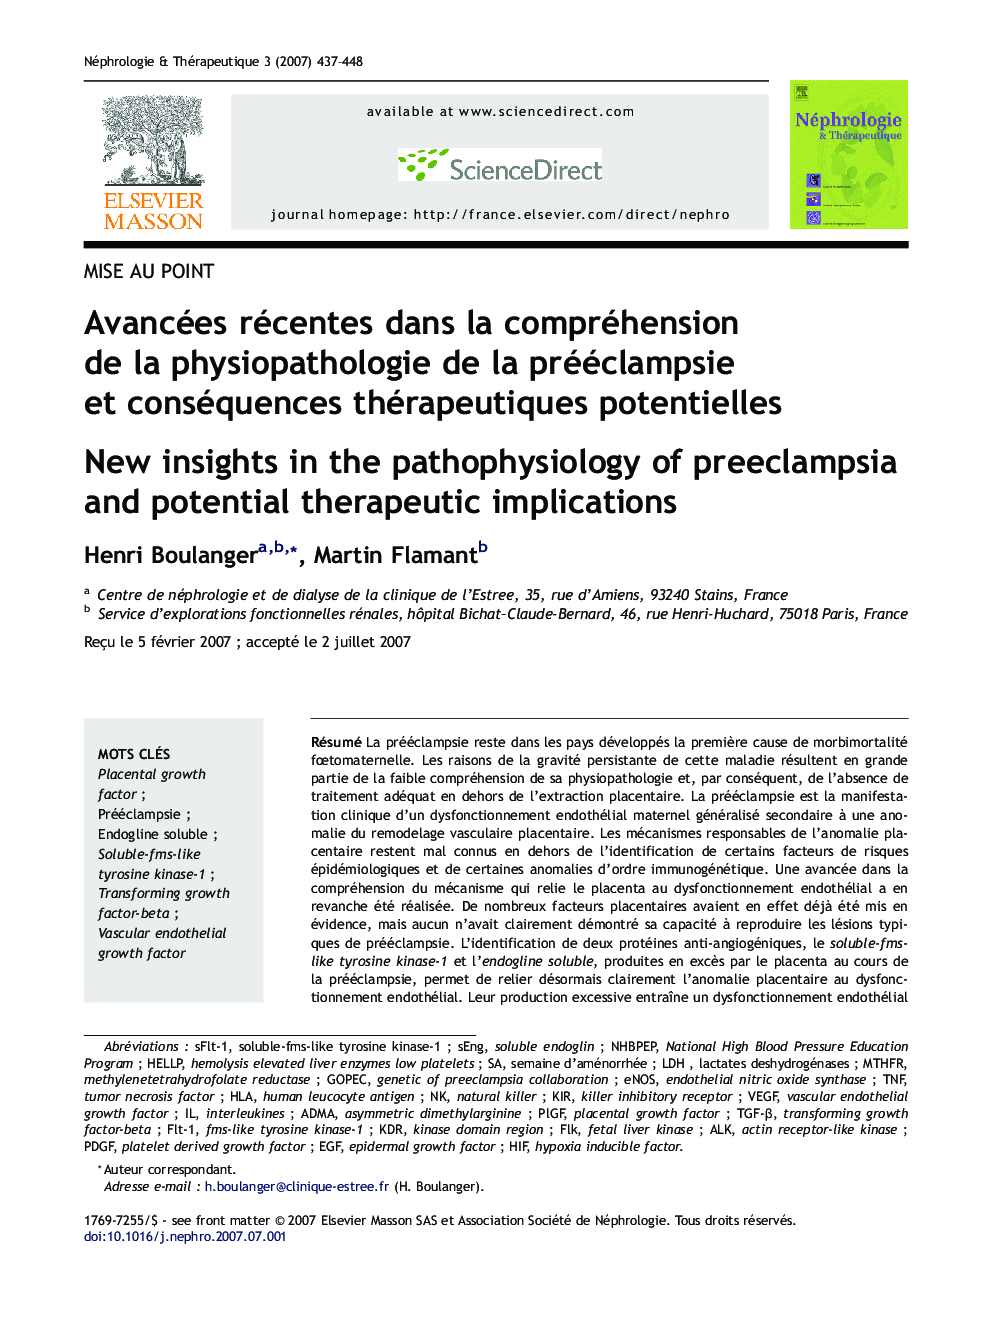 Avancées récentes dans la compréhension de la physiopathologie de la prééclampsie et conséquences thérapeutiques potentielles